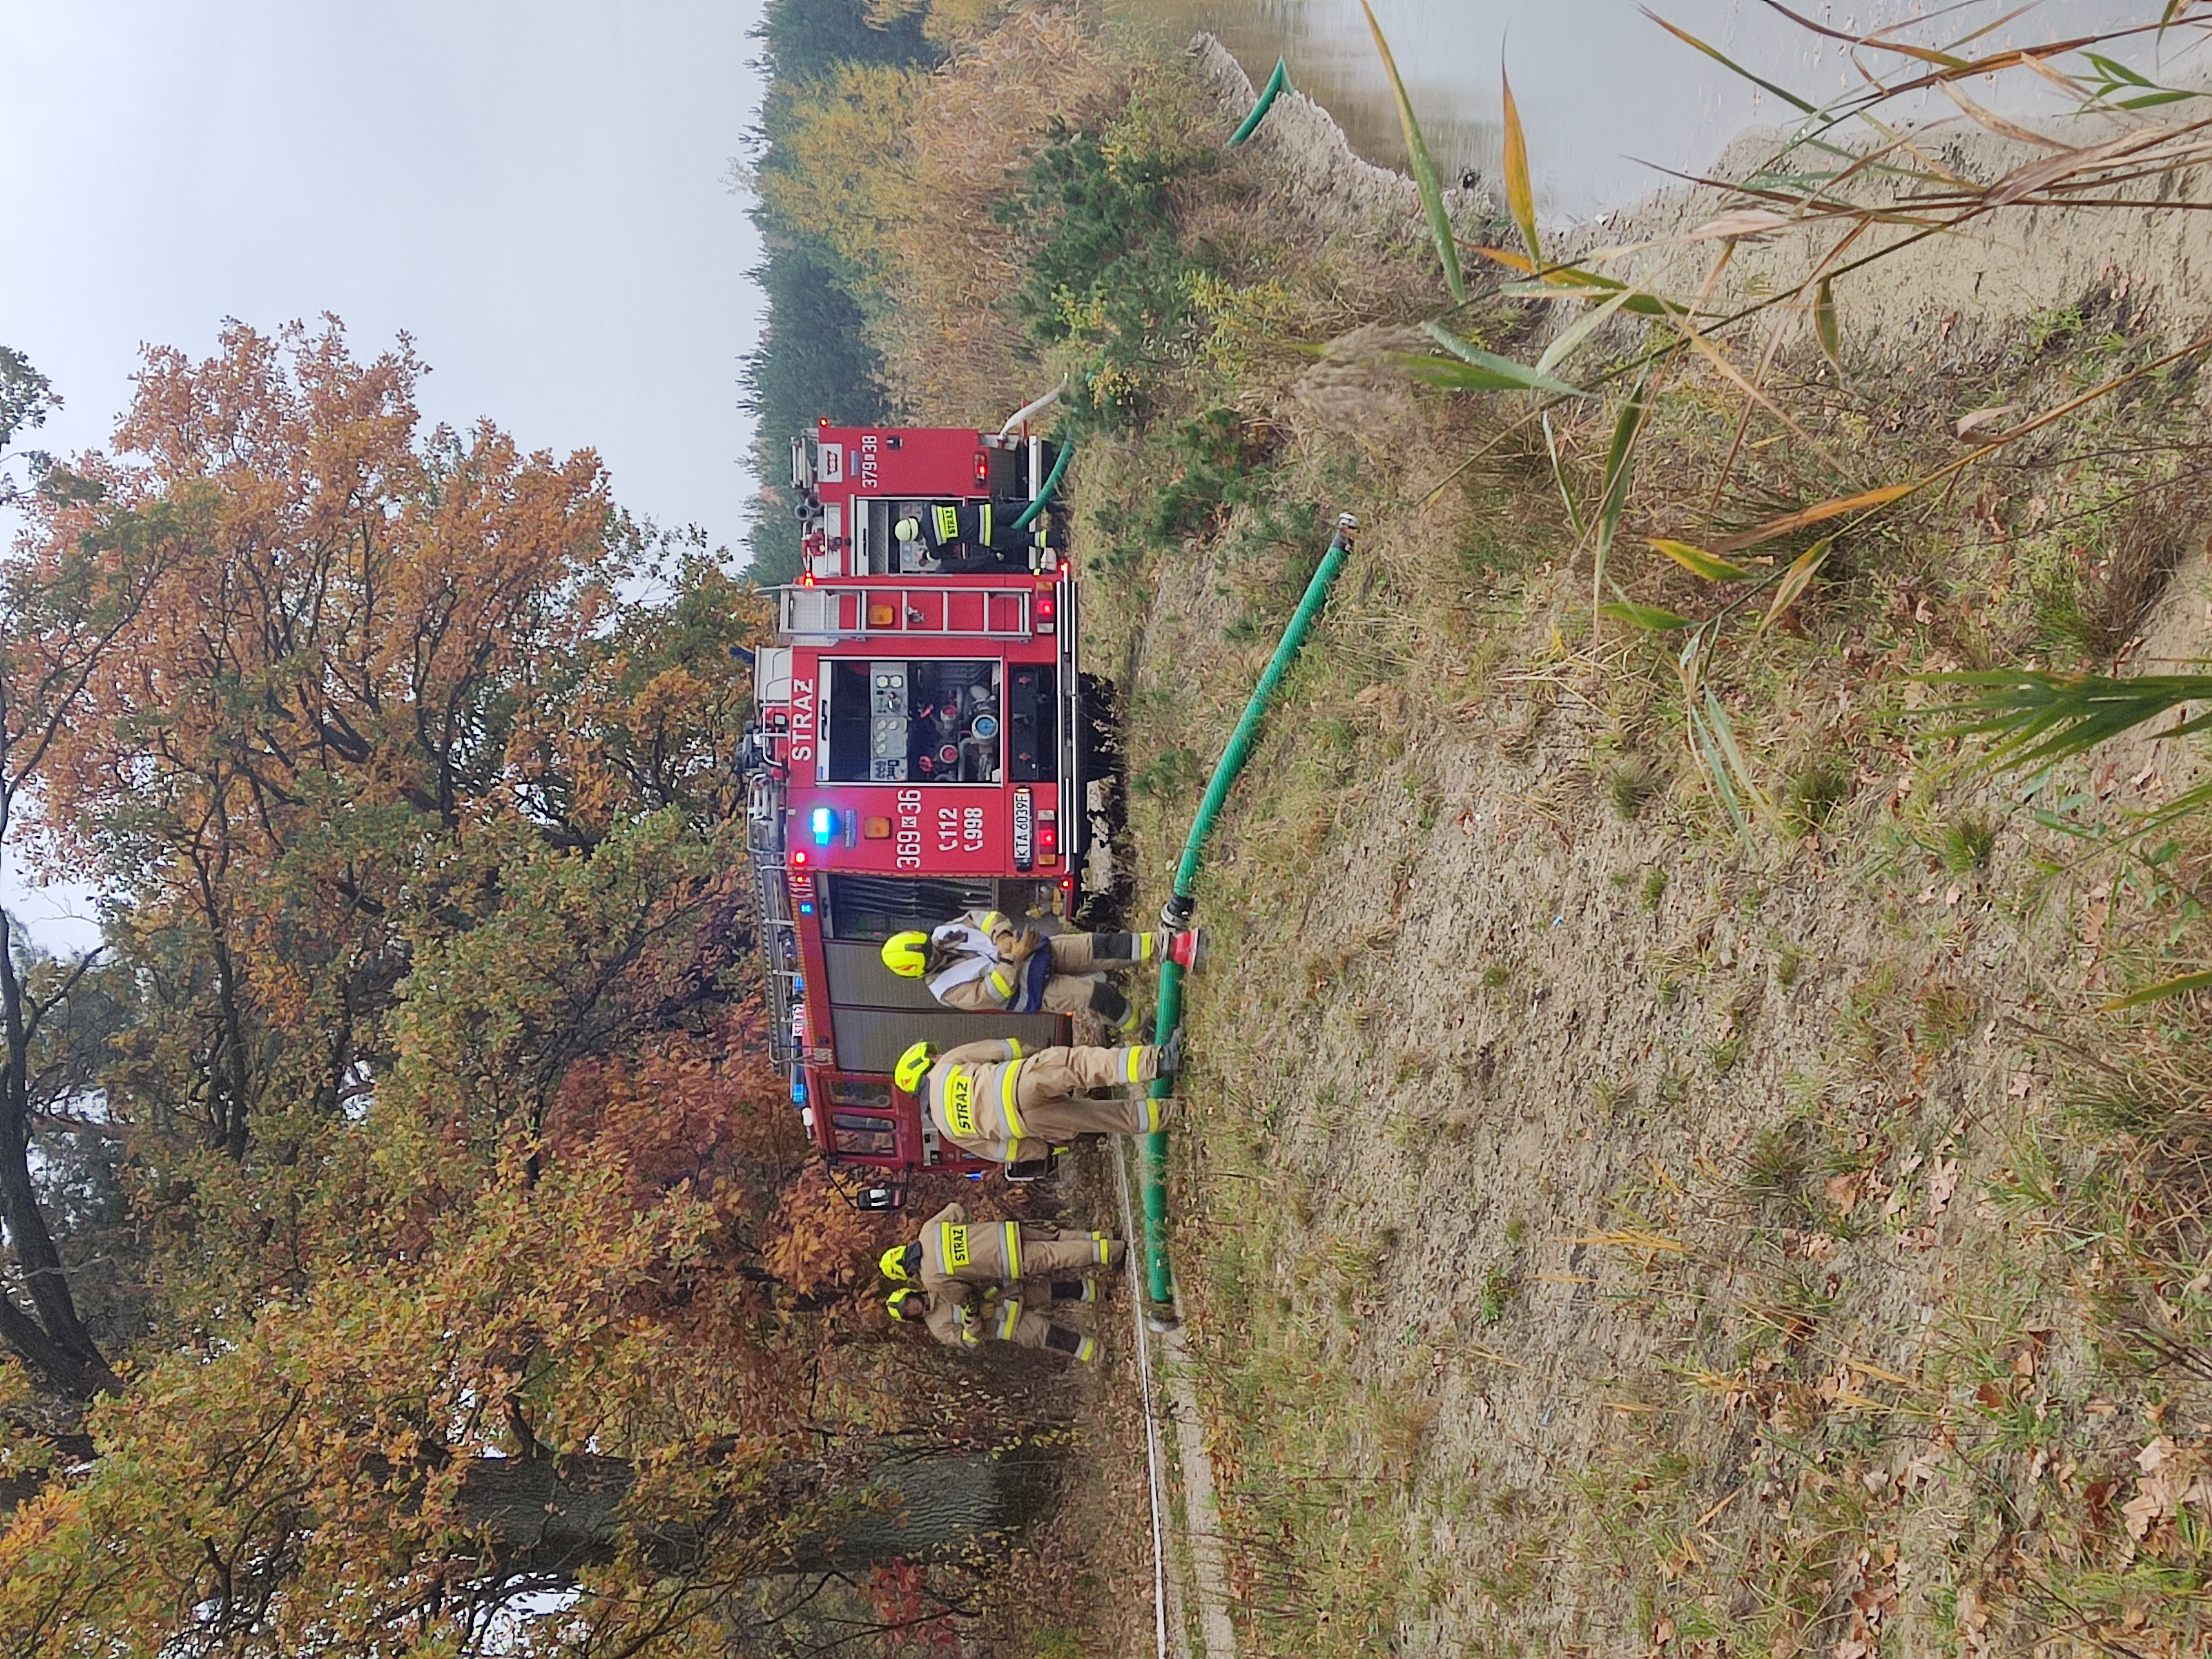 zdjęcie przedstawia dwa duże wozy strażackie oraz strażaków wraz ze sprzętem gaśniczym w trakcie ćwiczeń w lesie.